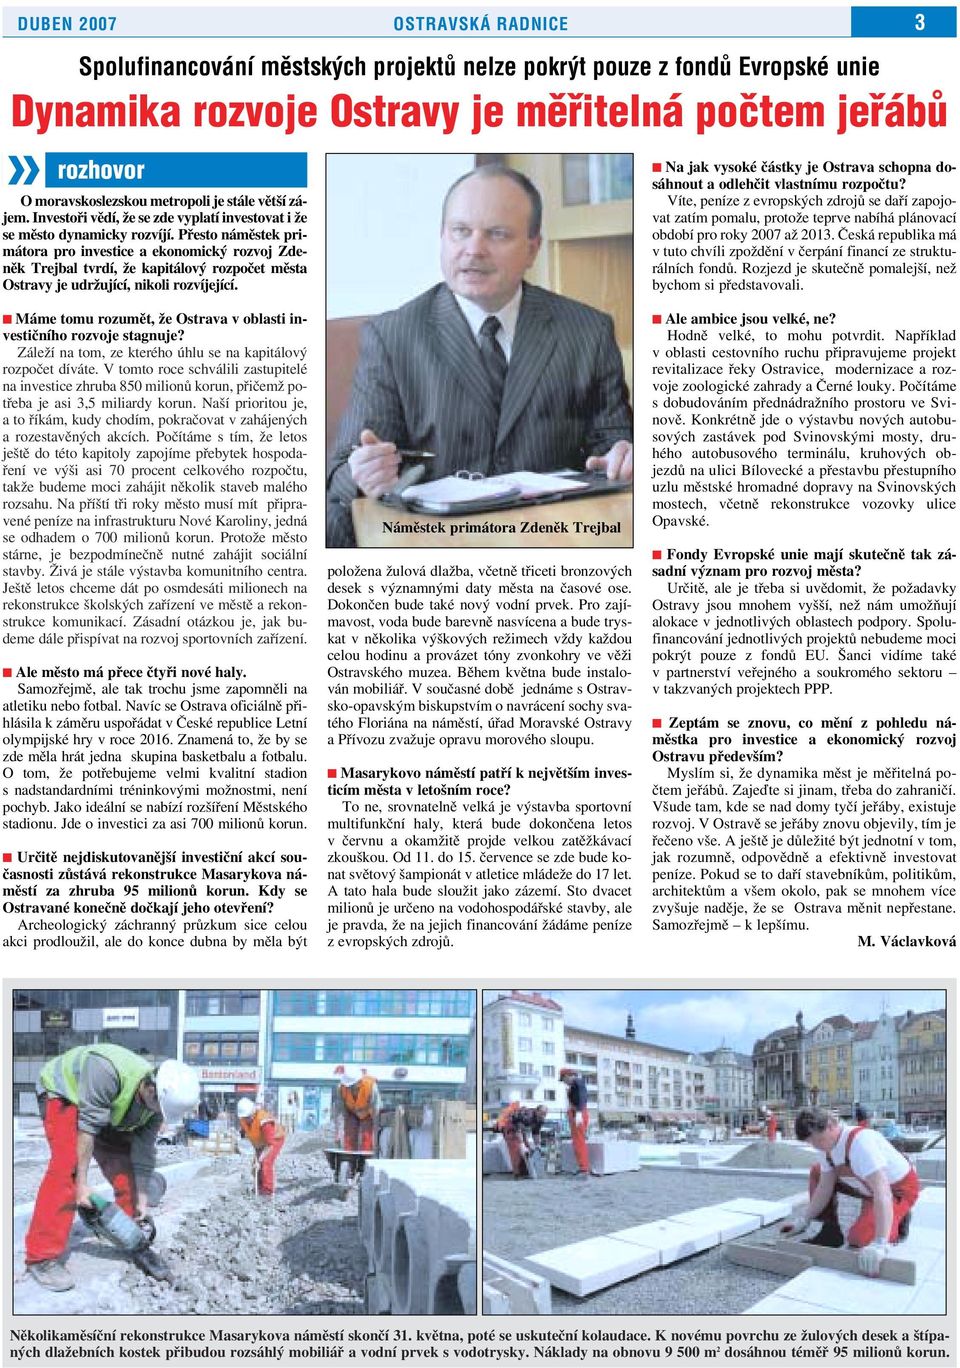 Přesto náměstek primátora pro investice a ekonomický rozvoj Zdeněk Trejbal tvrdí, že kapitálový rozpočet města Ostravy je udržující, nikoli rozvíjející.